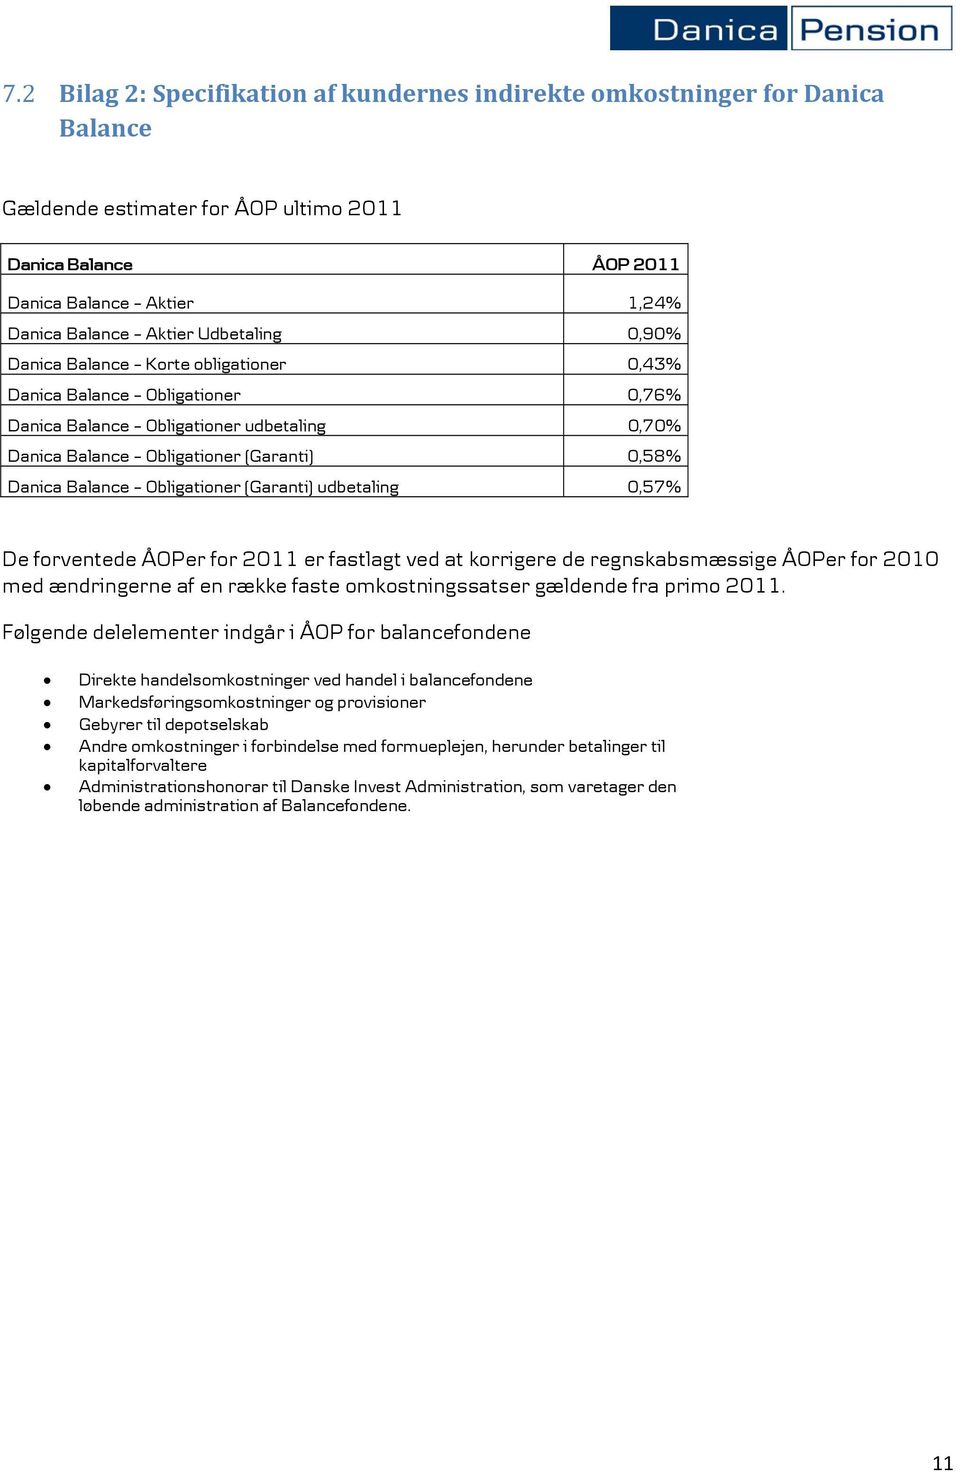 Obligationer (Garanti) udbetaling 0,57% De forventede ÅOPer for 2011 er fastlagt ved at korrigere de regnskabsmæssige ÅOPer for 2010 med ændringerne af en række faste omkostningssatser gældende fra